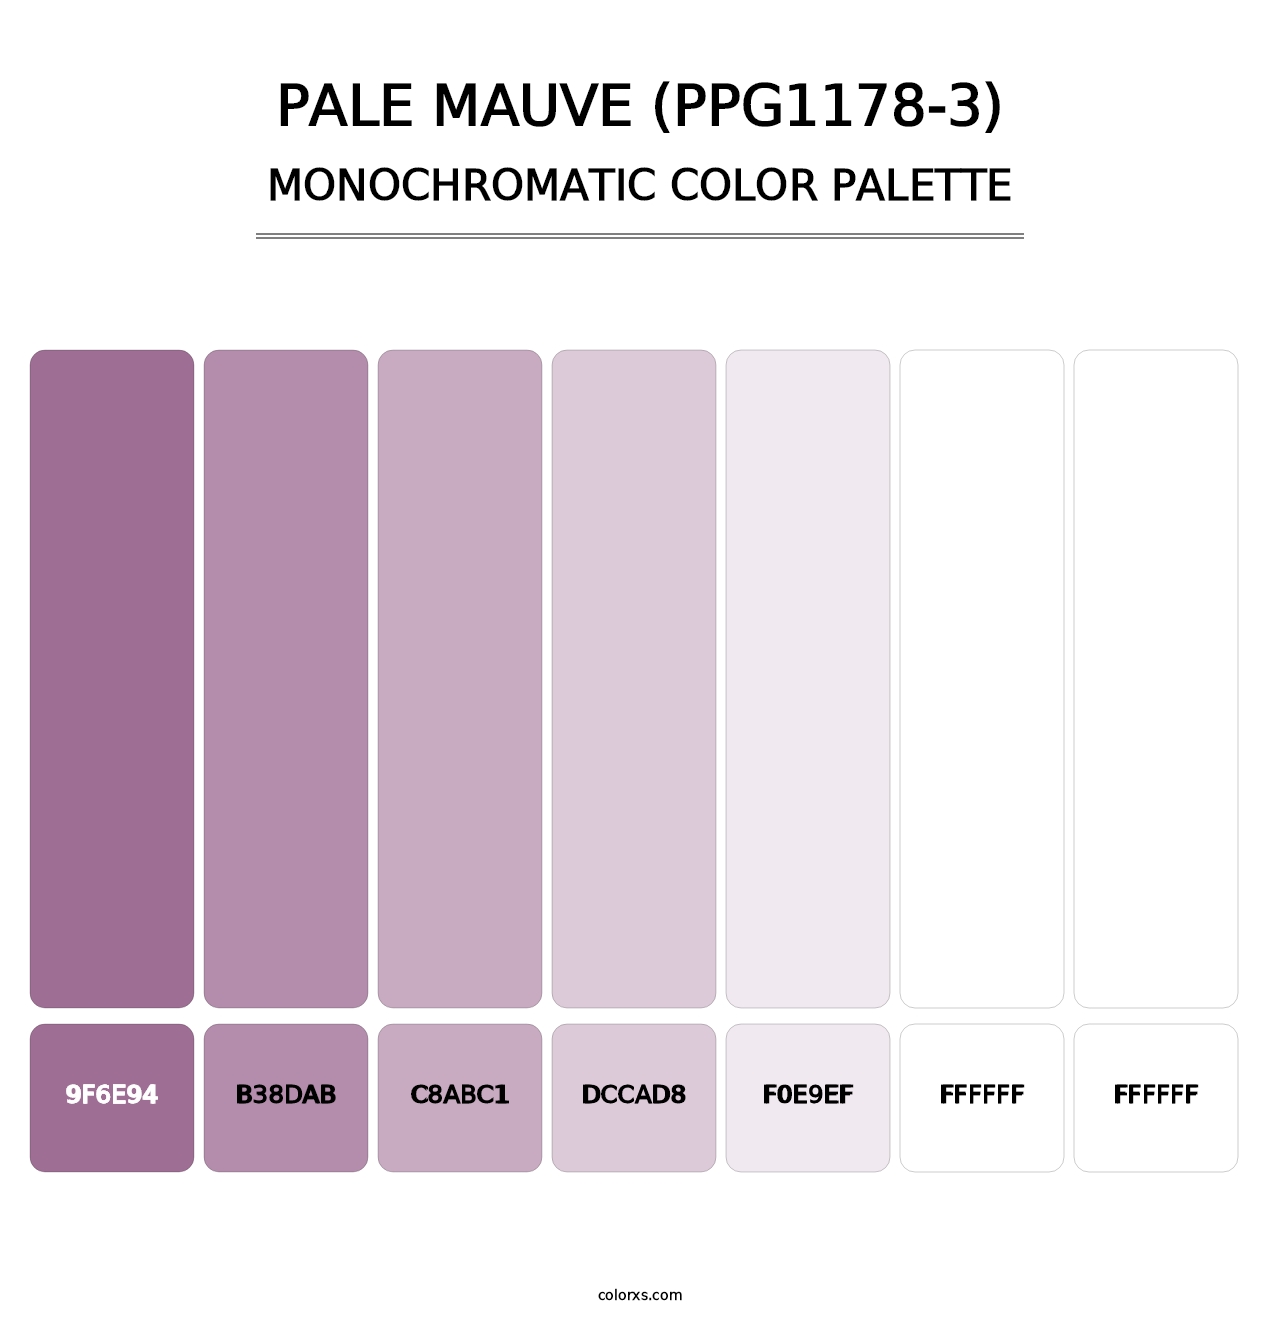 Pale Mauve (PPG1178-3) - Monochromatic Color Palette